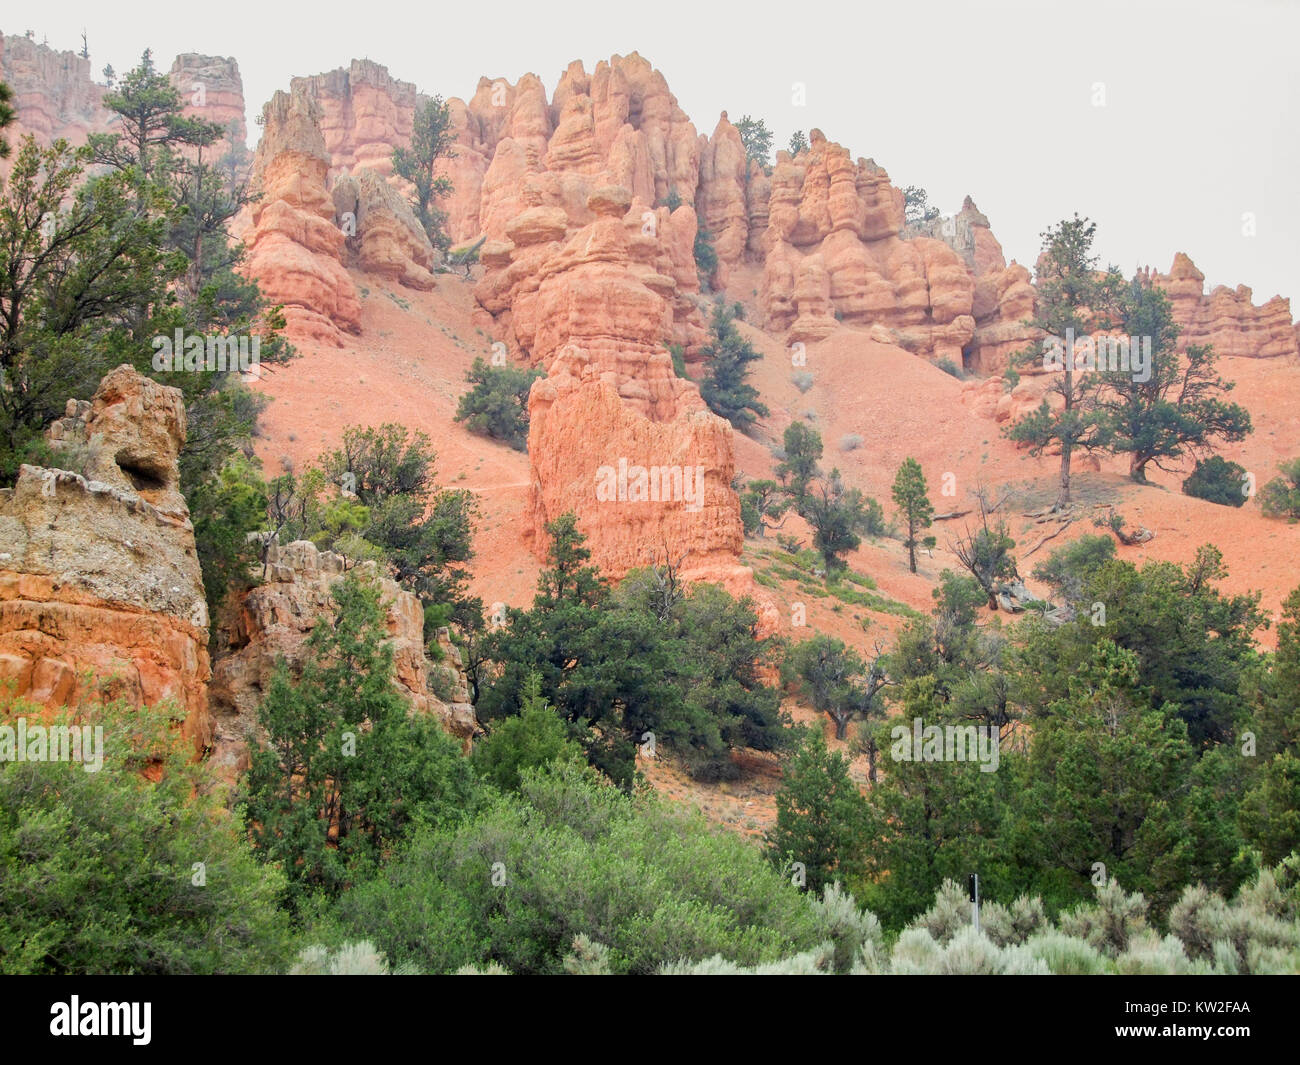 Paysage rocheux avec cheminées et arbres au Parc National de Bryce Canyon situé dans l'Utah en USA Banque D'Images